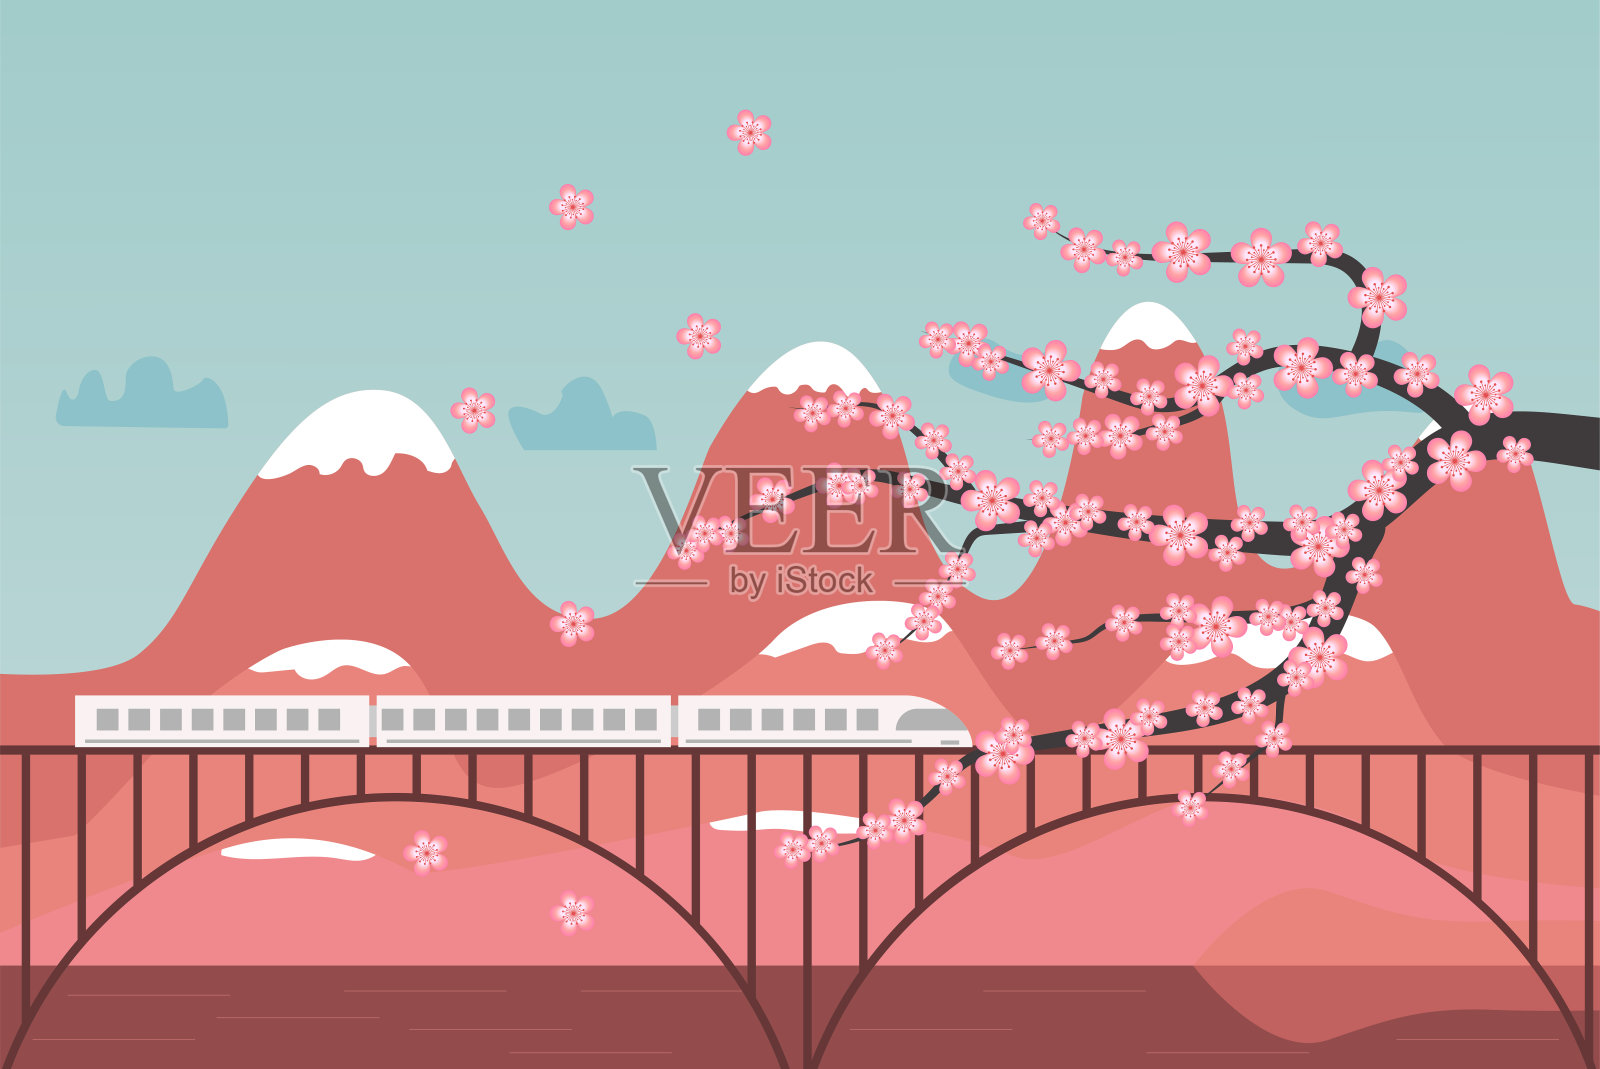 美丽的风景在日本自然樱花树和火车插画图片素材